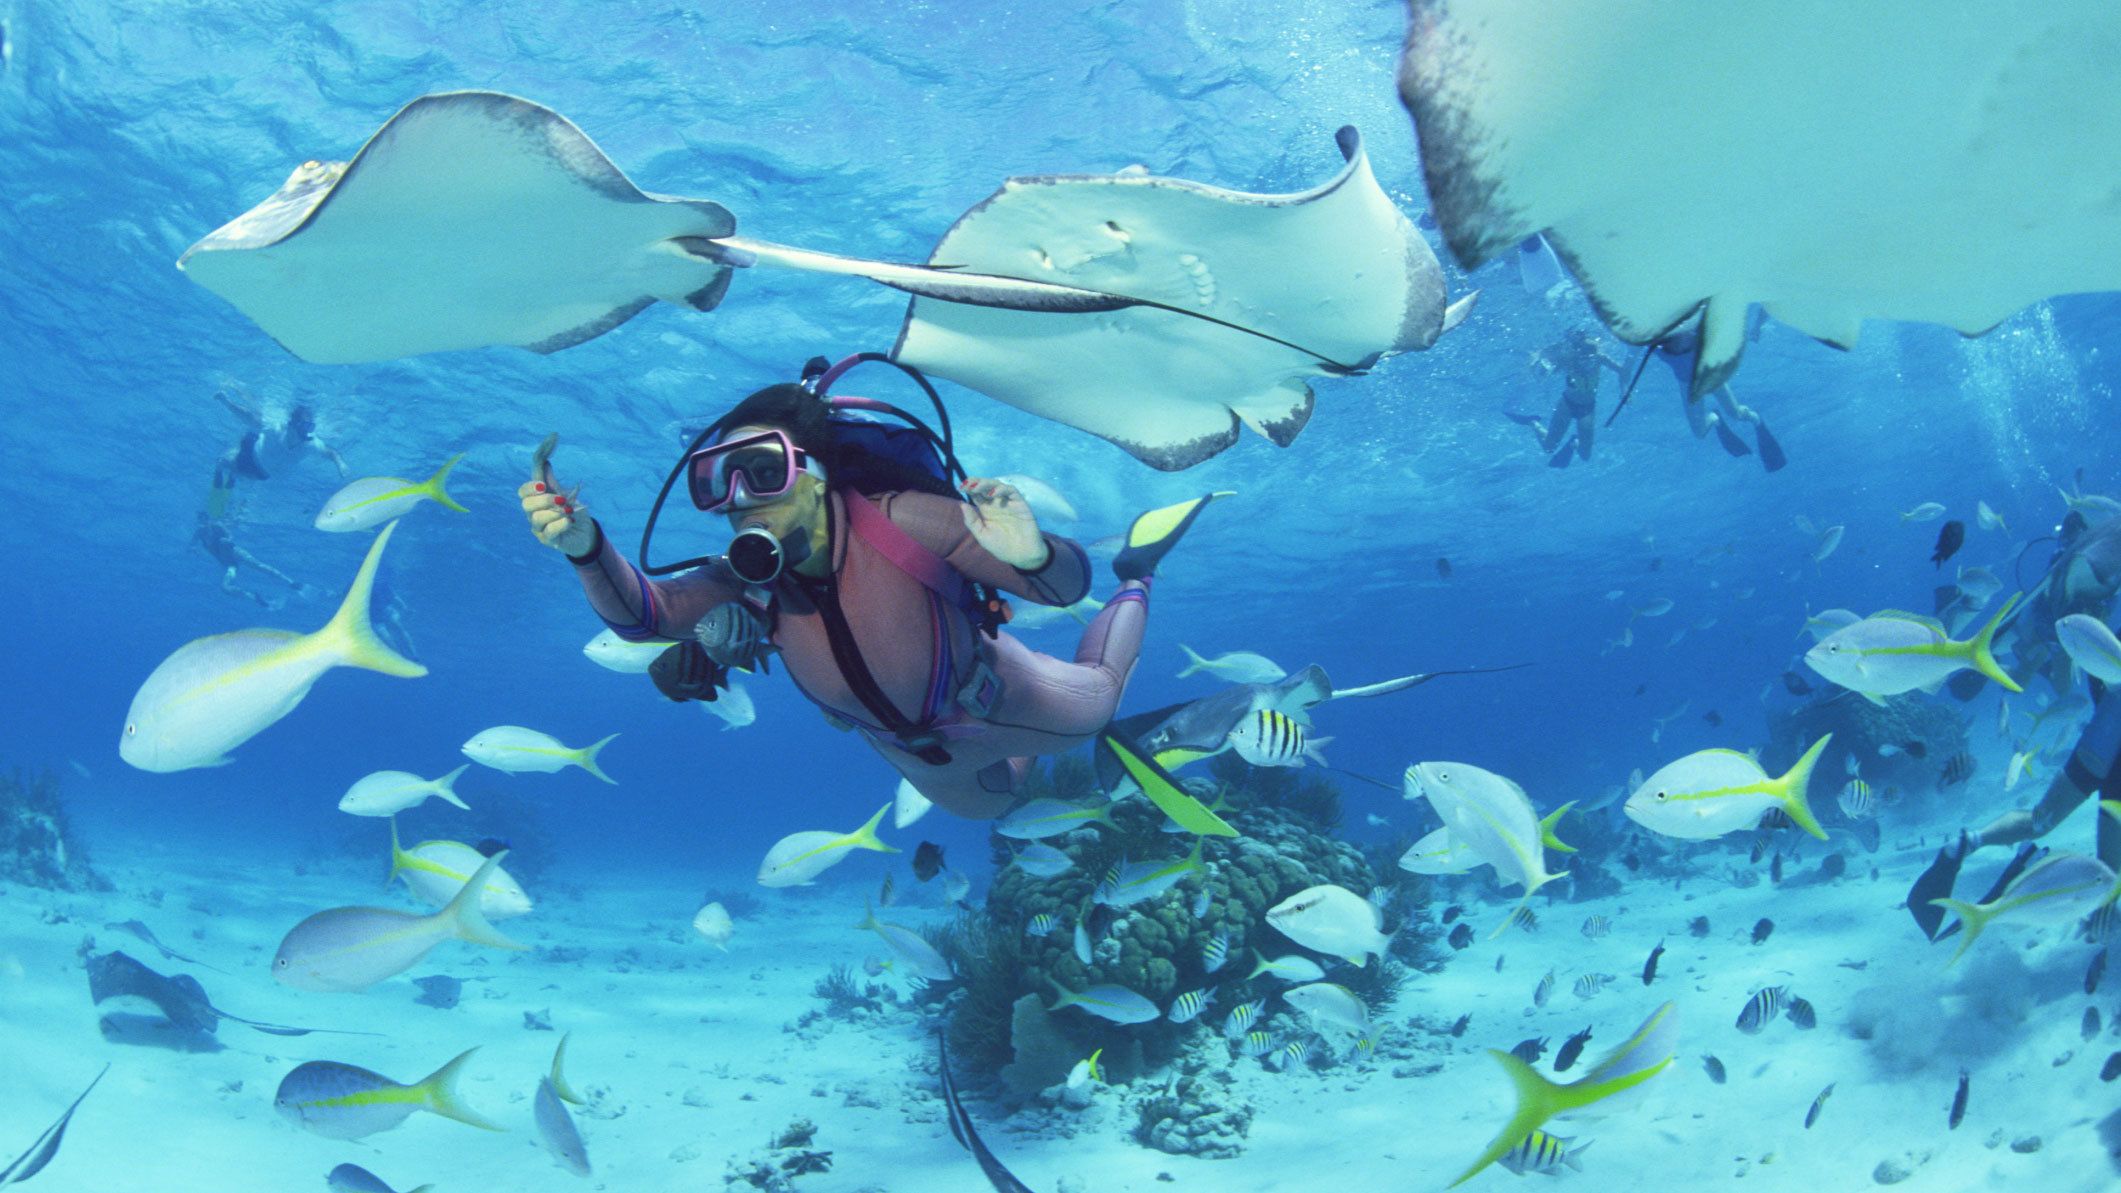 Aruba atrae turistas y amantes del buceo por la calidad de sus aguas y la biodiversidad marina. Crédito: Expedia